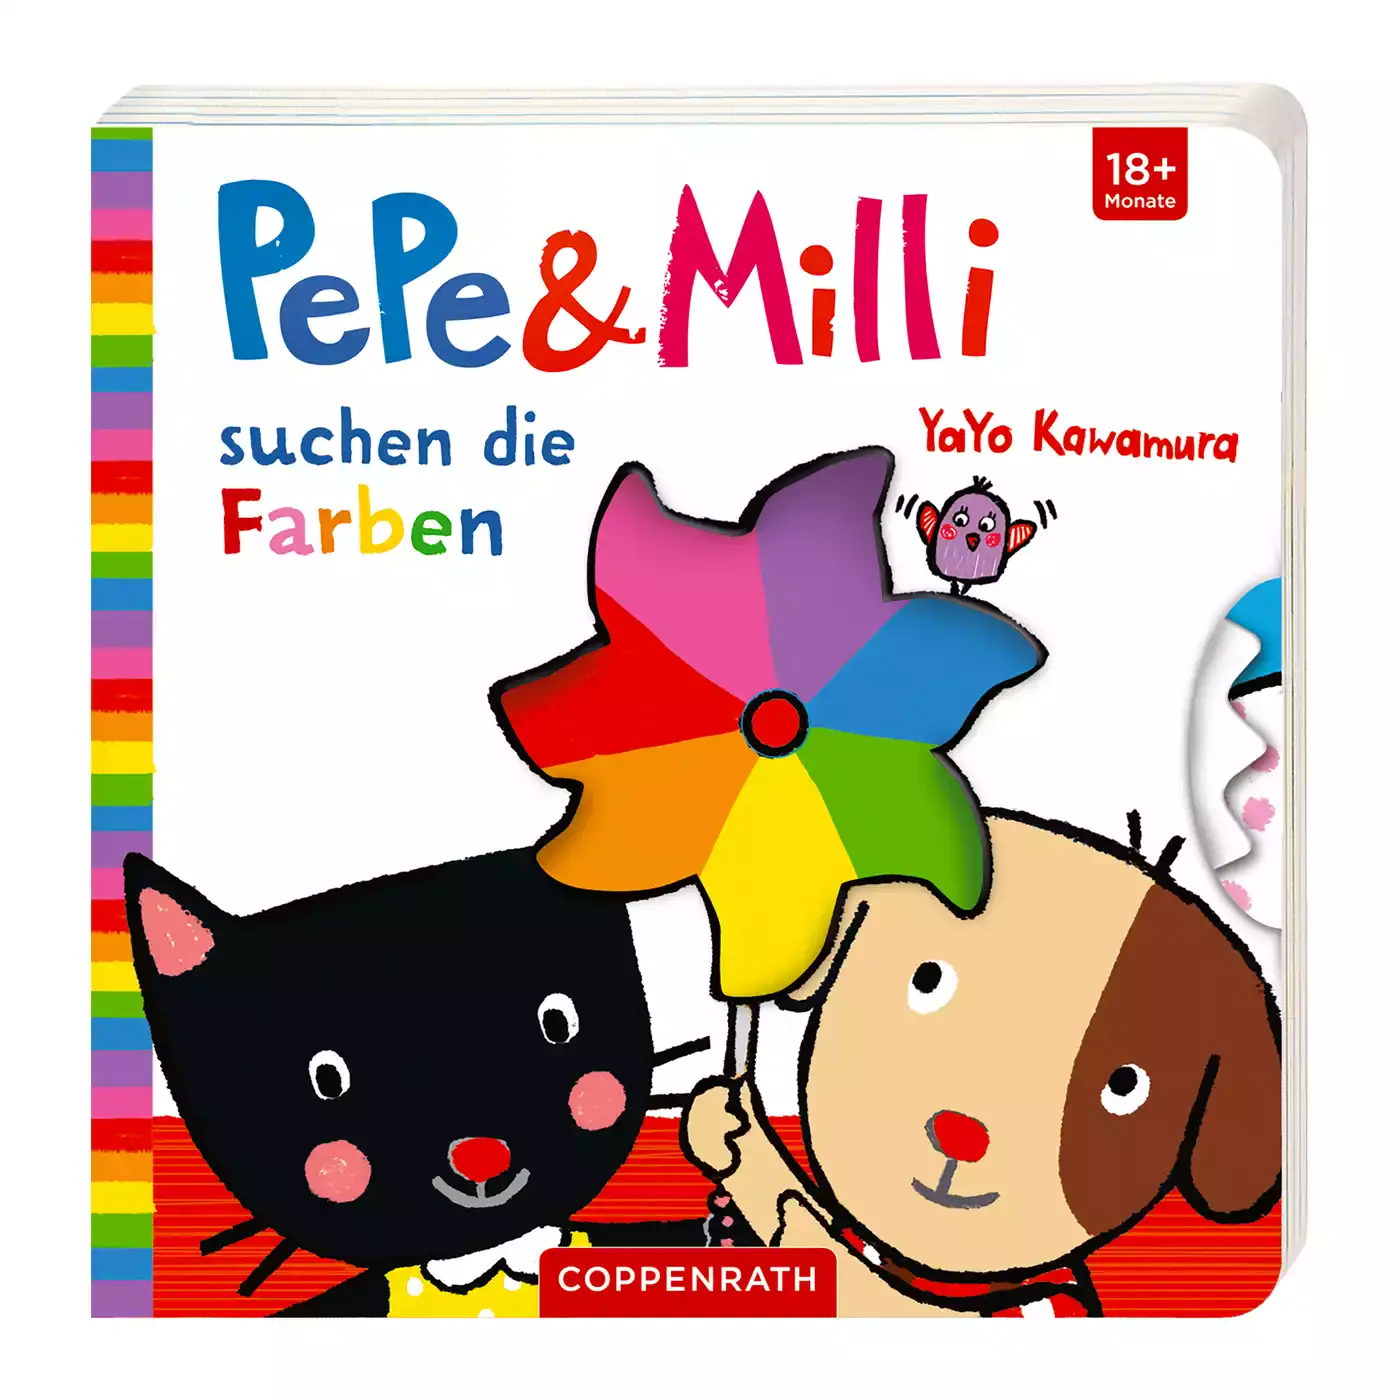 Pepe & Milli suchen die Farben COPPENRATH 2000576309505 3